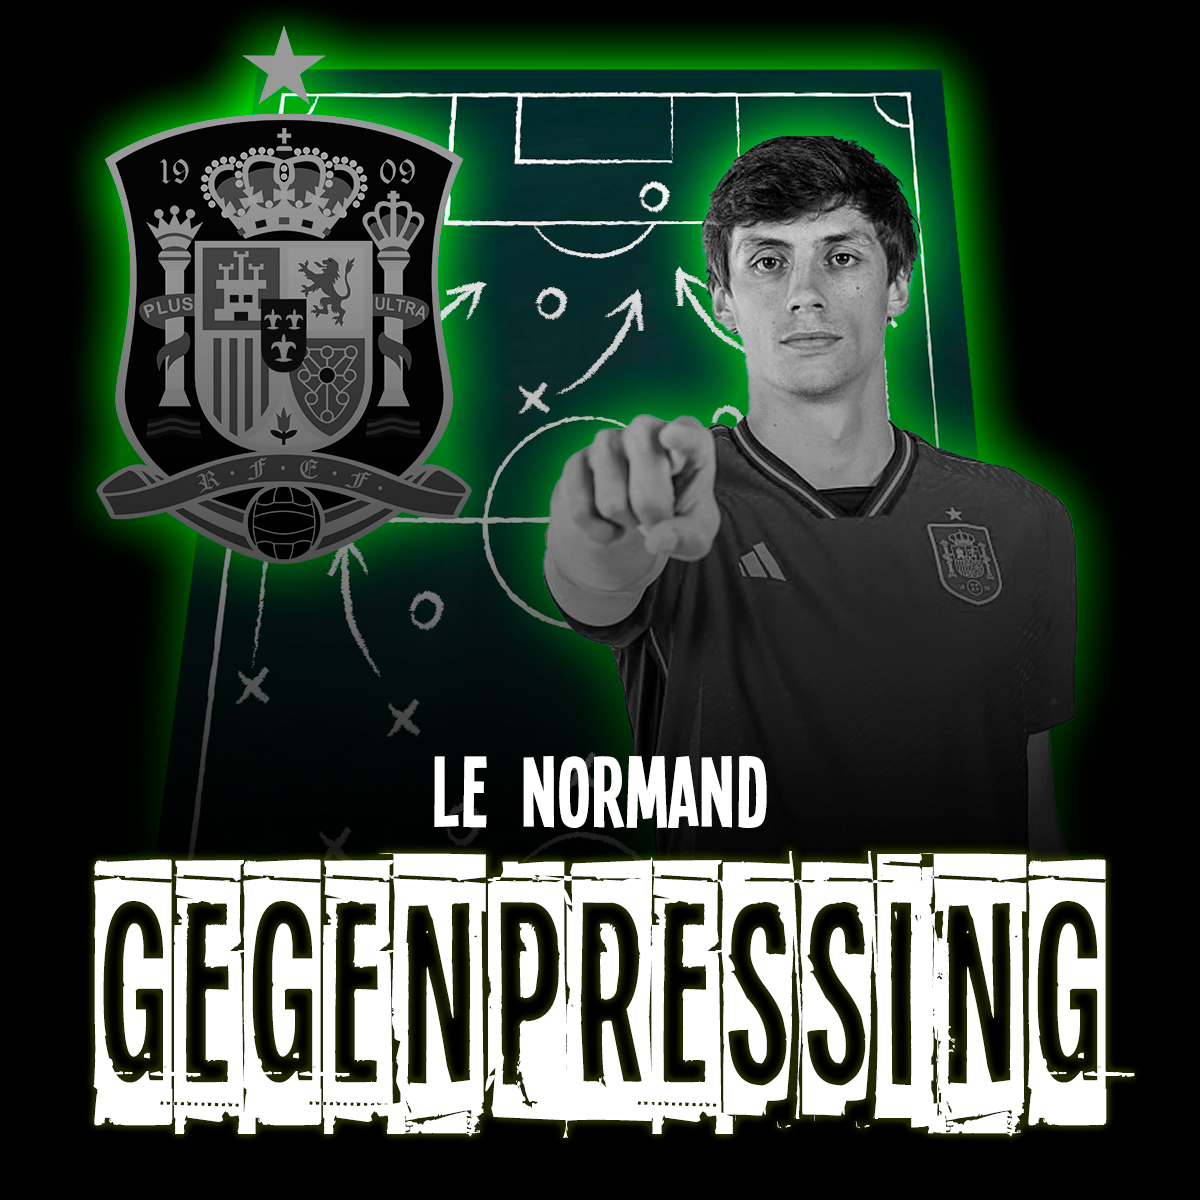 Le Normand seleccion española podcast futbool